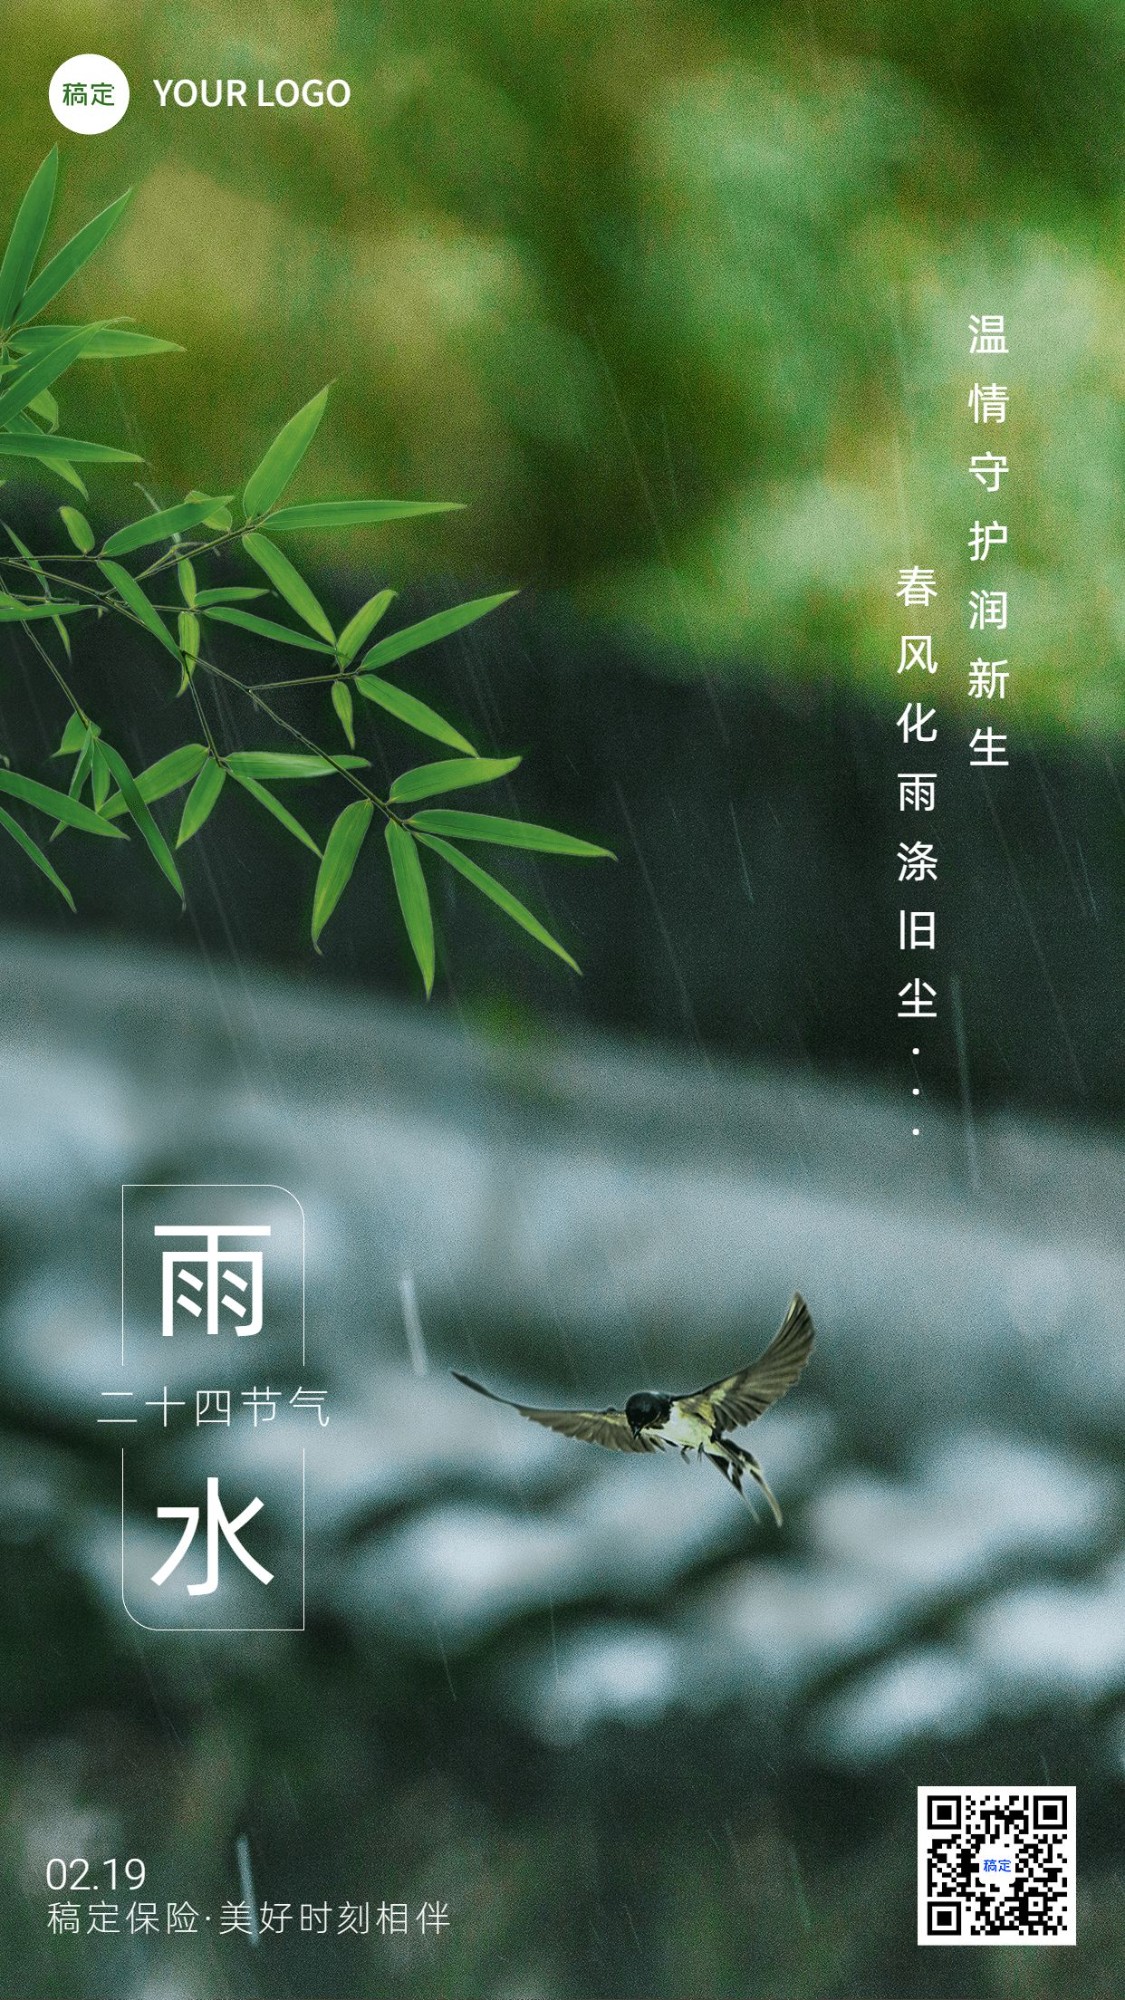 雨水金融保险节气祝福问候实景风手机海报